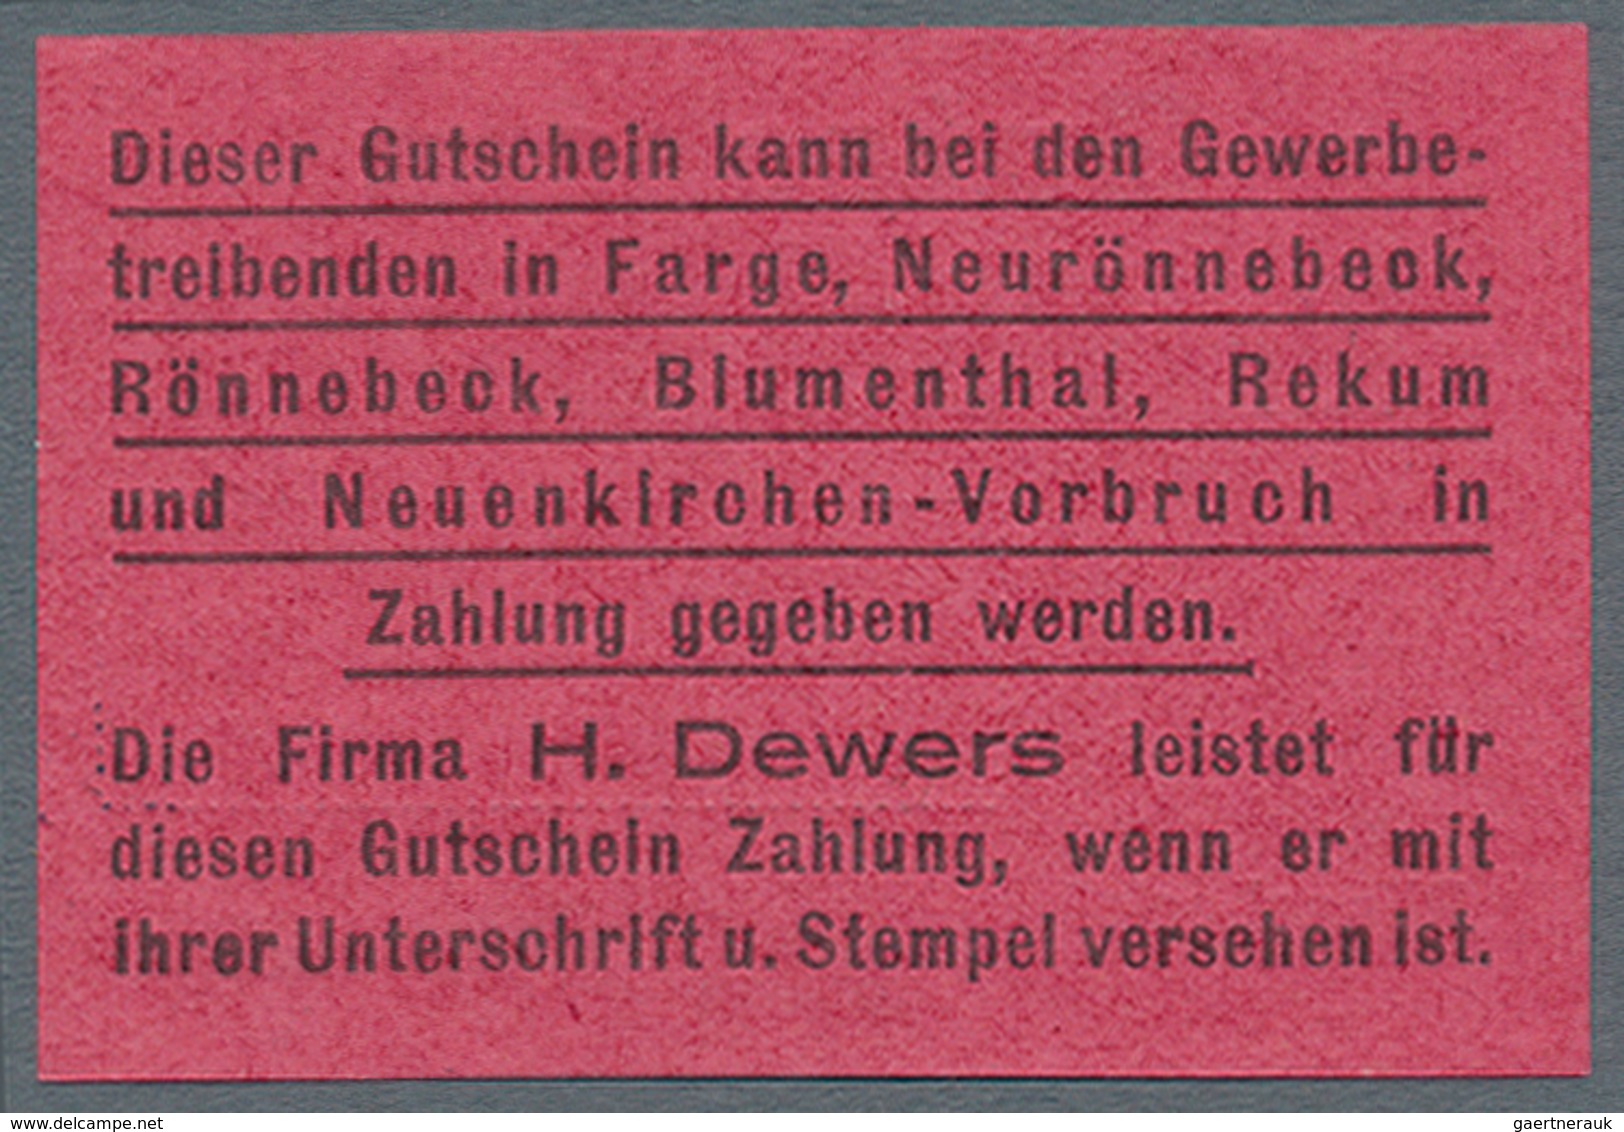 Deutschland - Notgeld - Bremen: Rönnebeck, H. Dewers, Masch. u. Armaturenfabrik, 1, 2, 3, 5 Mark (je